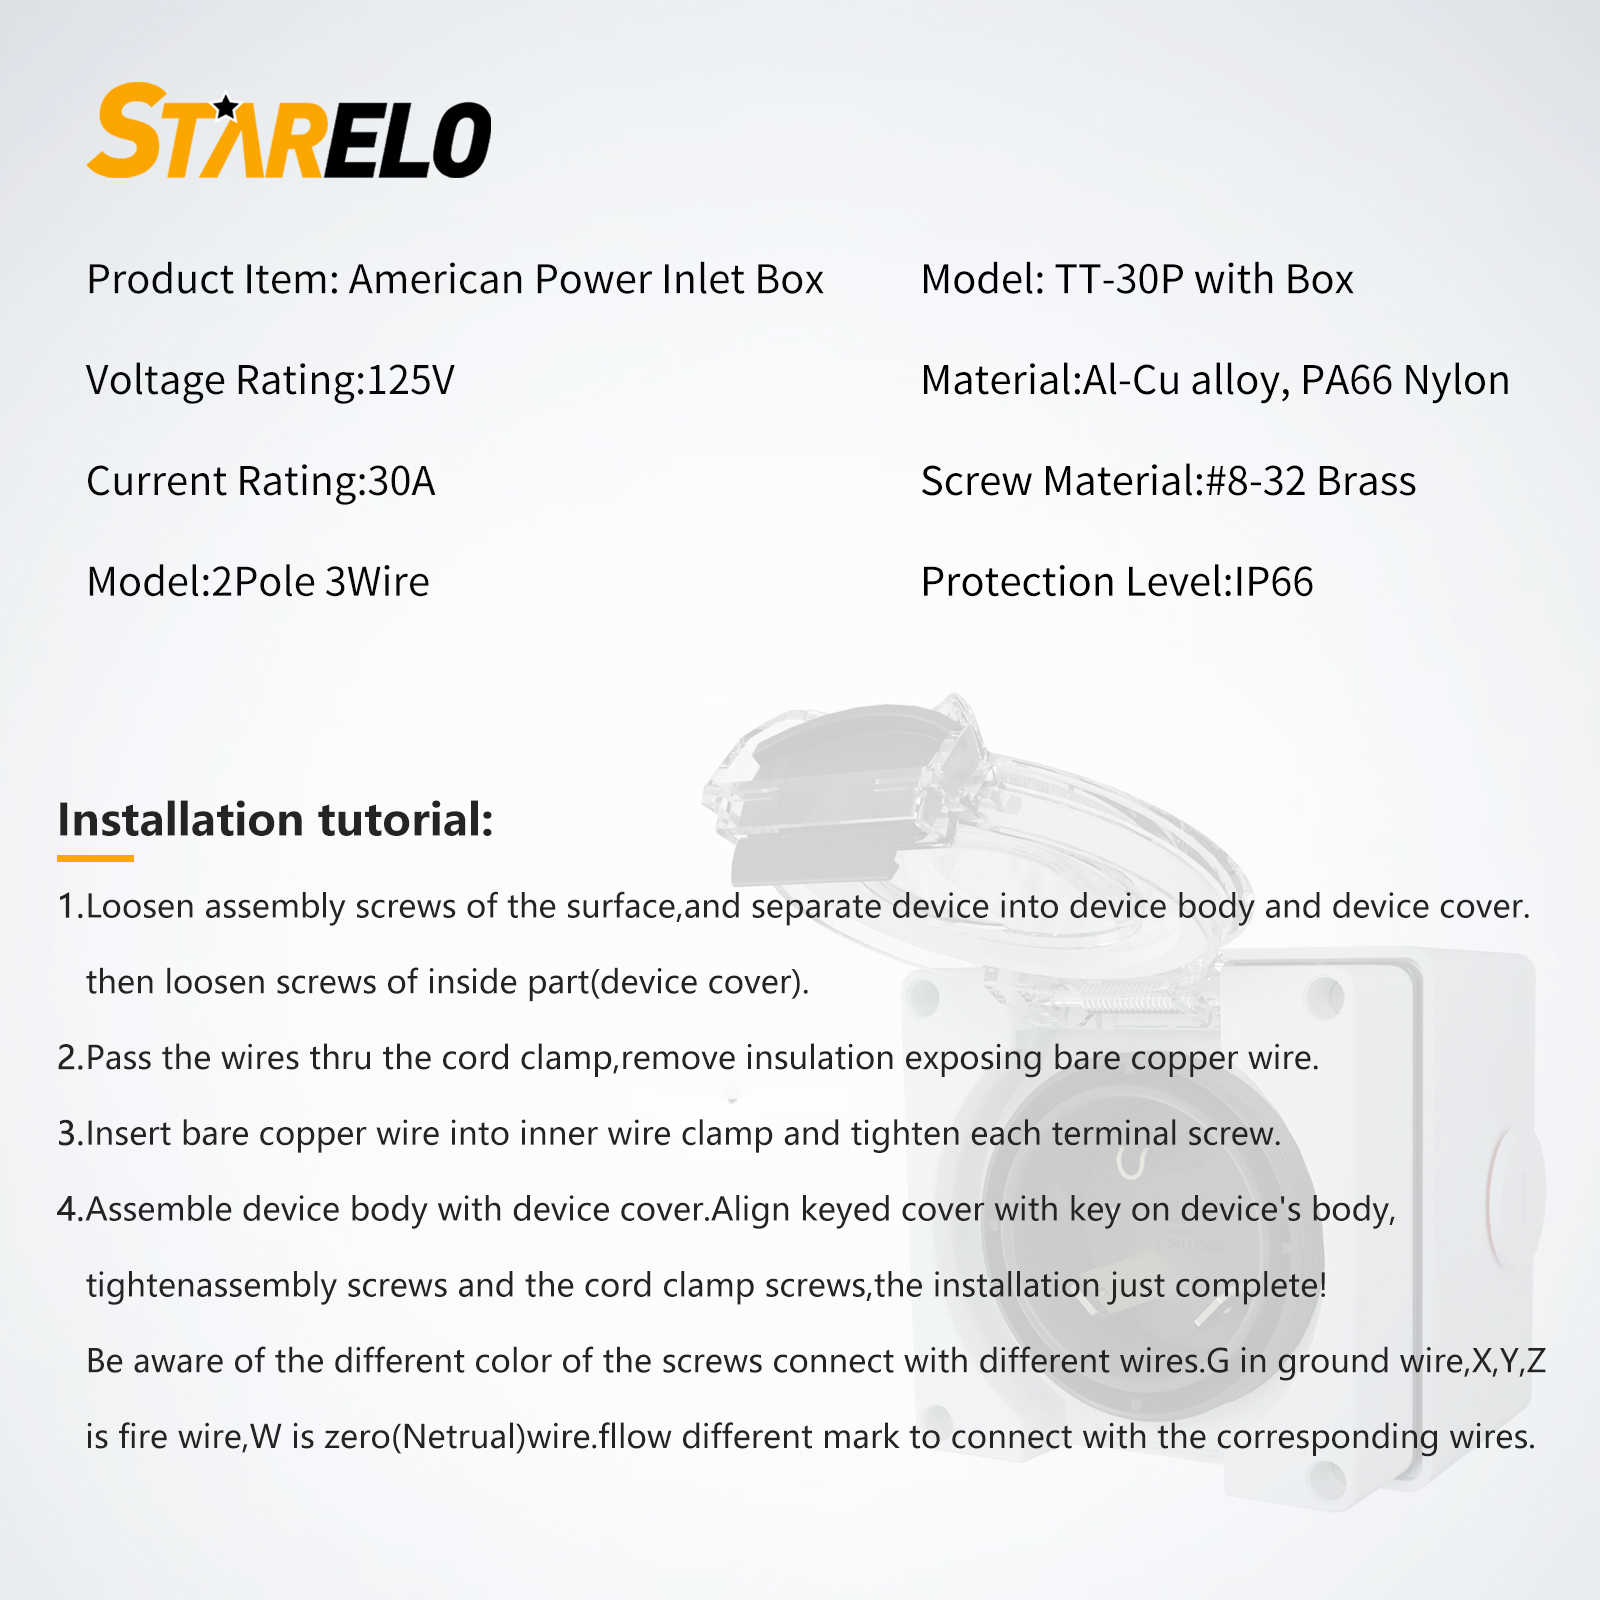 NEMA TT-30P 30Amp Power Inlet Box specification and installation tutorials